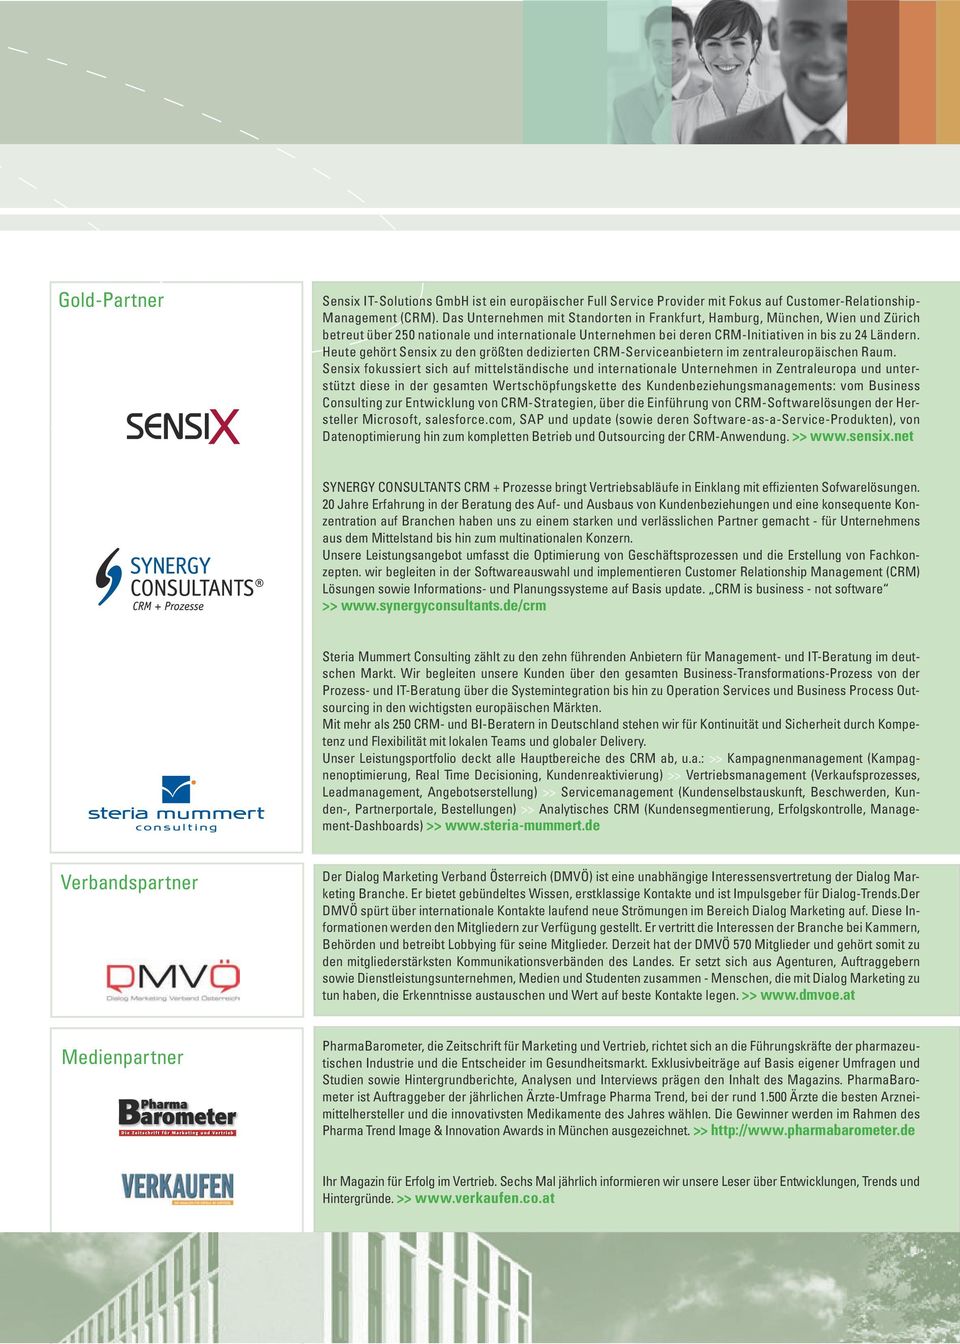 Heute gehört Sensix zu den größten dedizierten CRM-Serviceanbietern im zentraleuropäischen Raum.